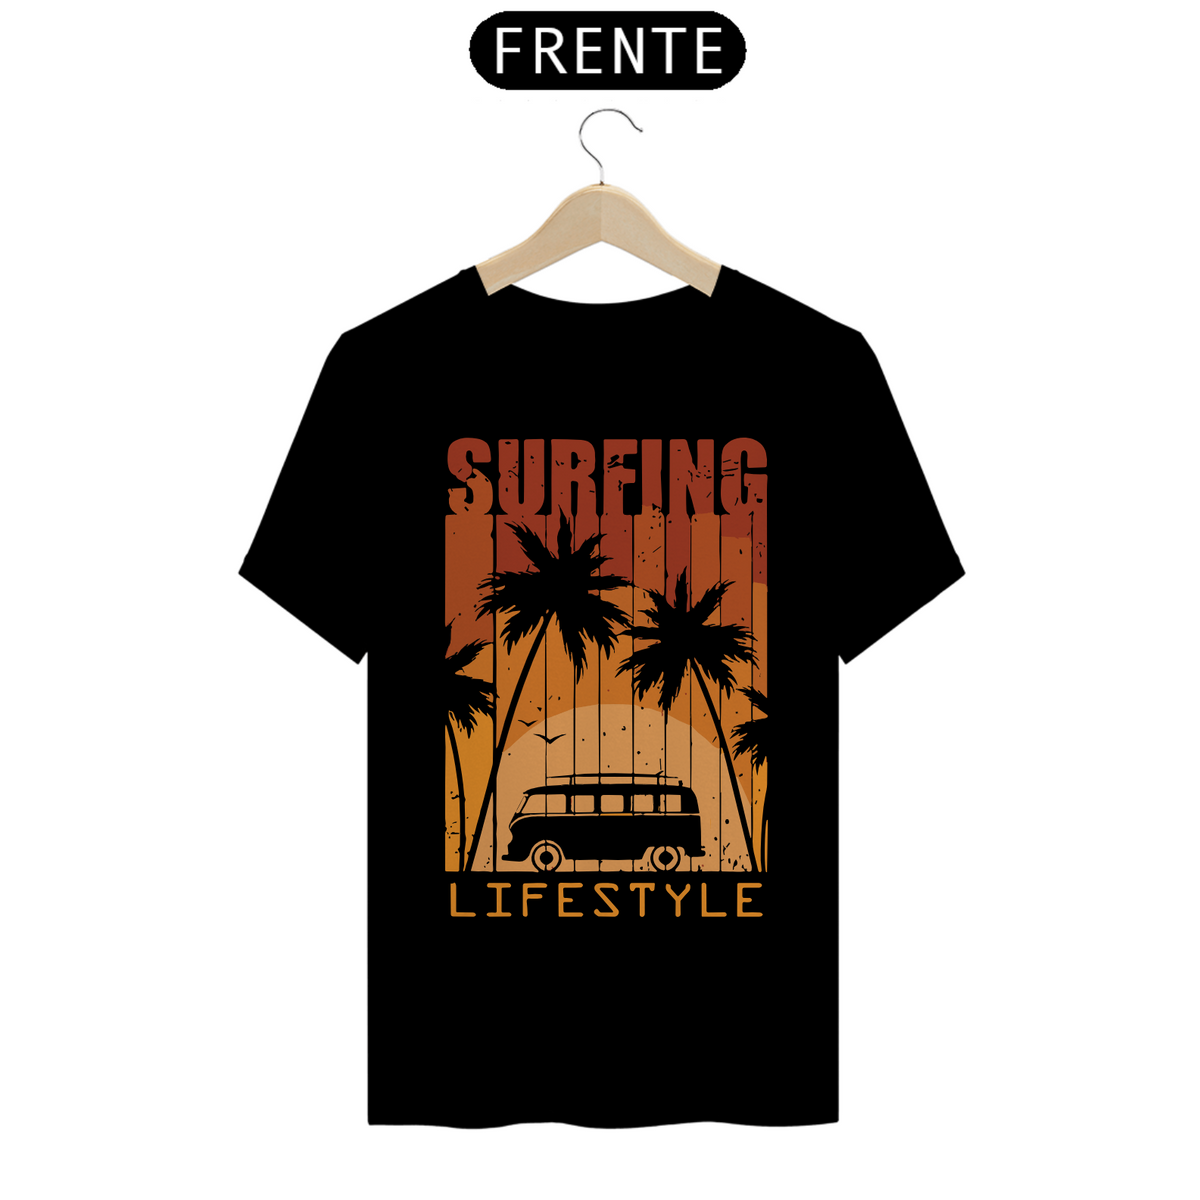 Nome do produto: SURFING LIFE STYLE - Camiseta Personalizada com Estampa de Surf